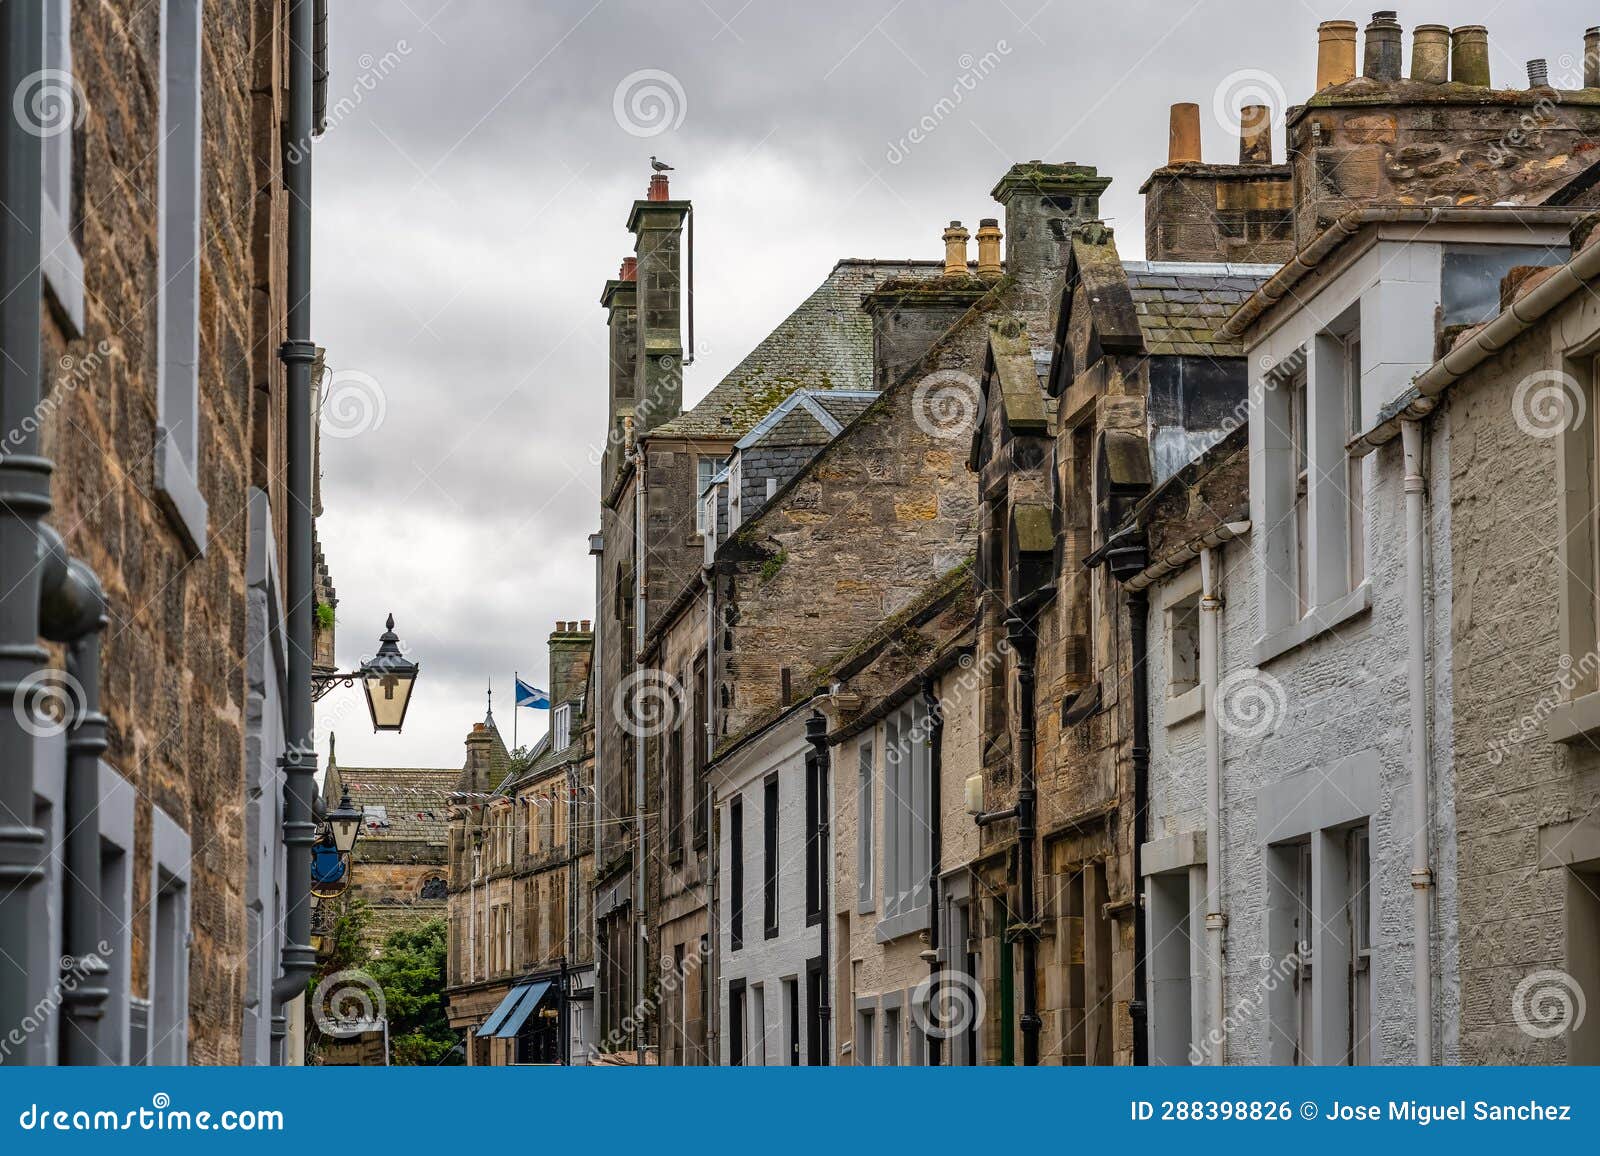 callejon pintoresco de la ciudad escocesa de saint andrews en la coste este del pais.